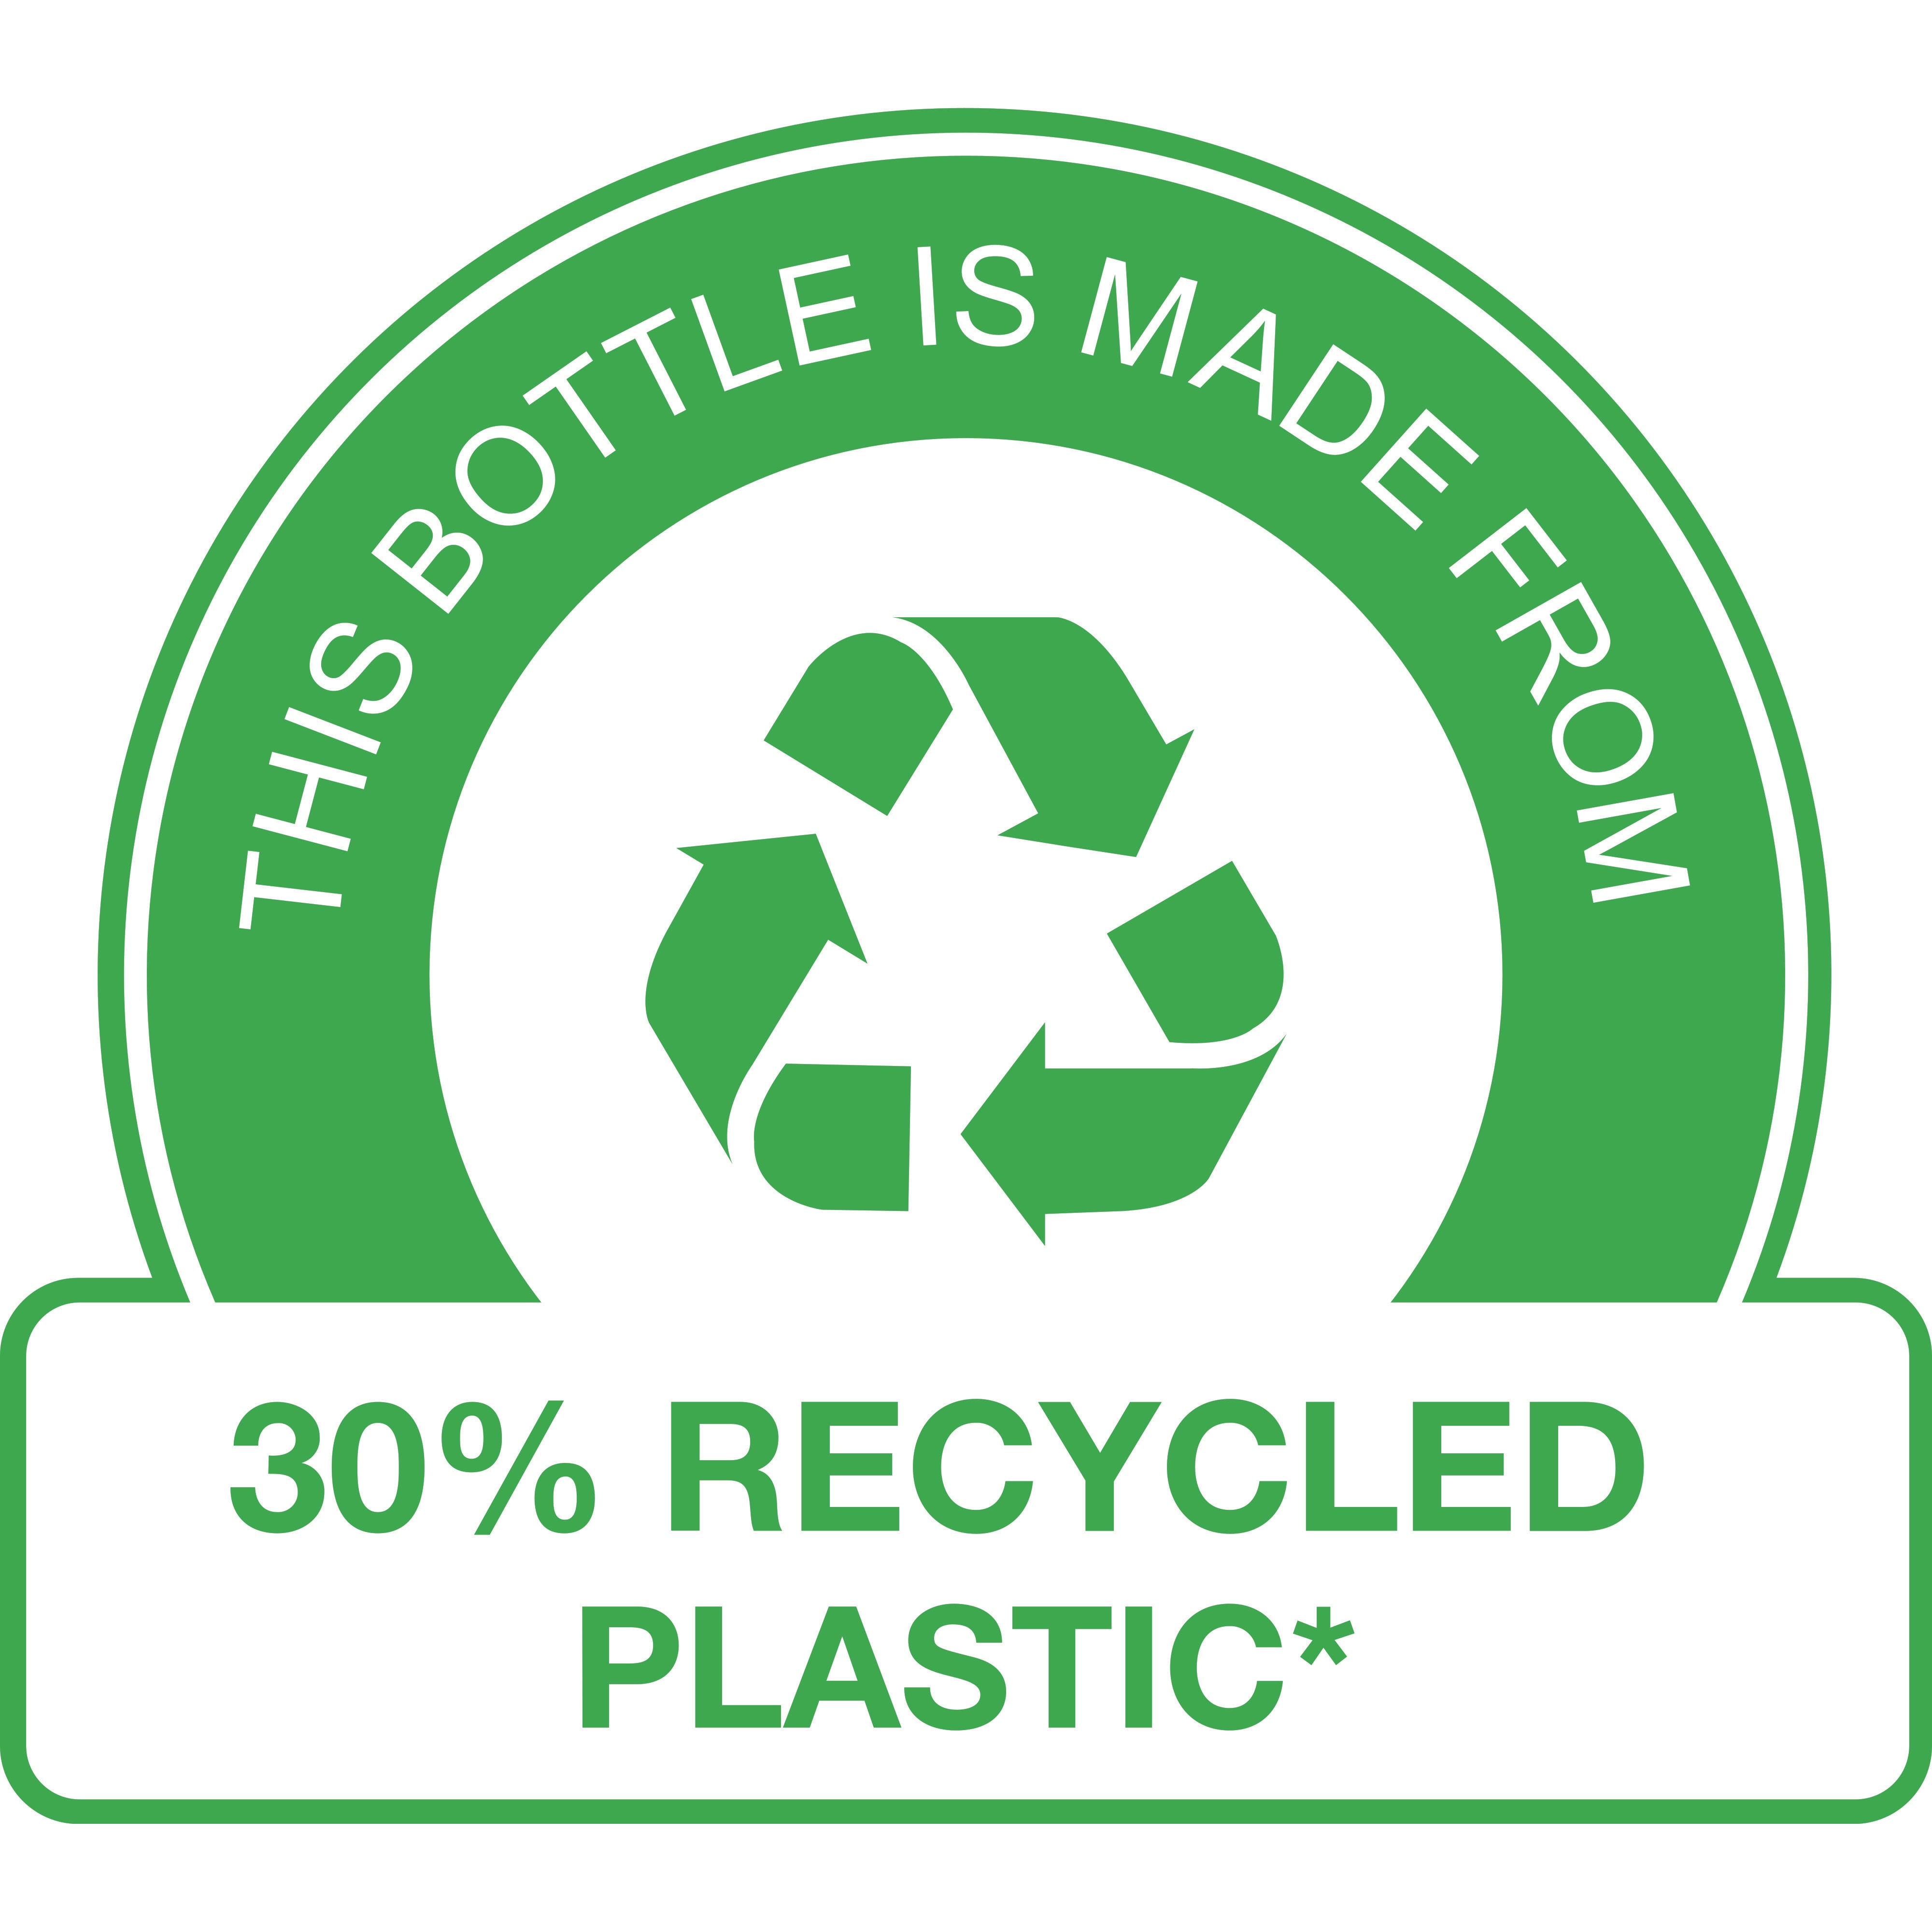 Butelka wyprodukowana w 30% z tworzyw sztucznych pochodzących z recyklingu* 

(* z wyjątkiem pompki)